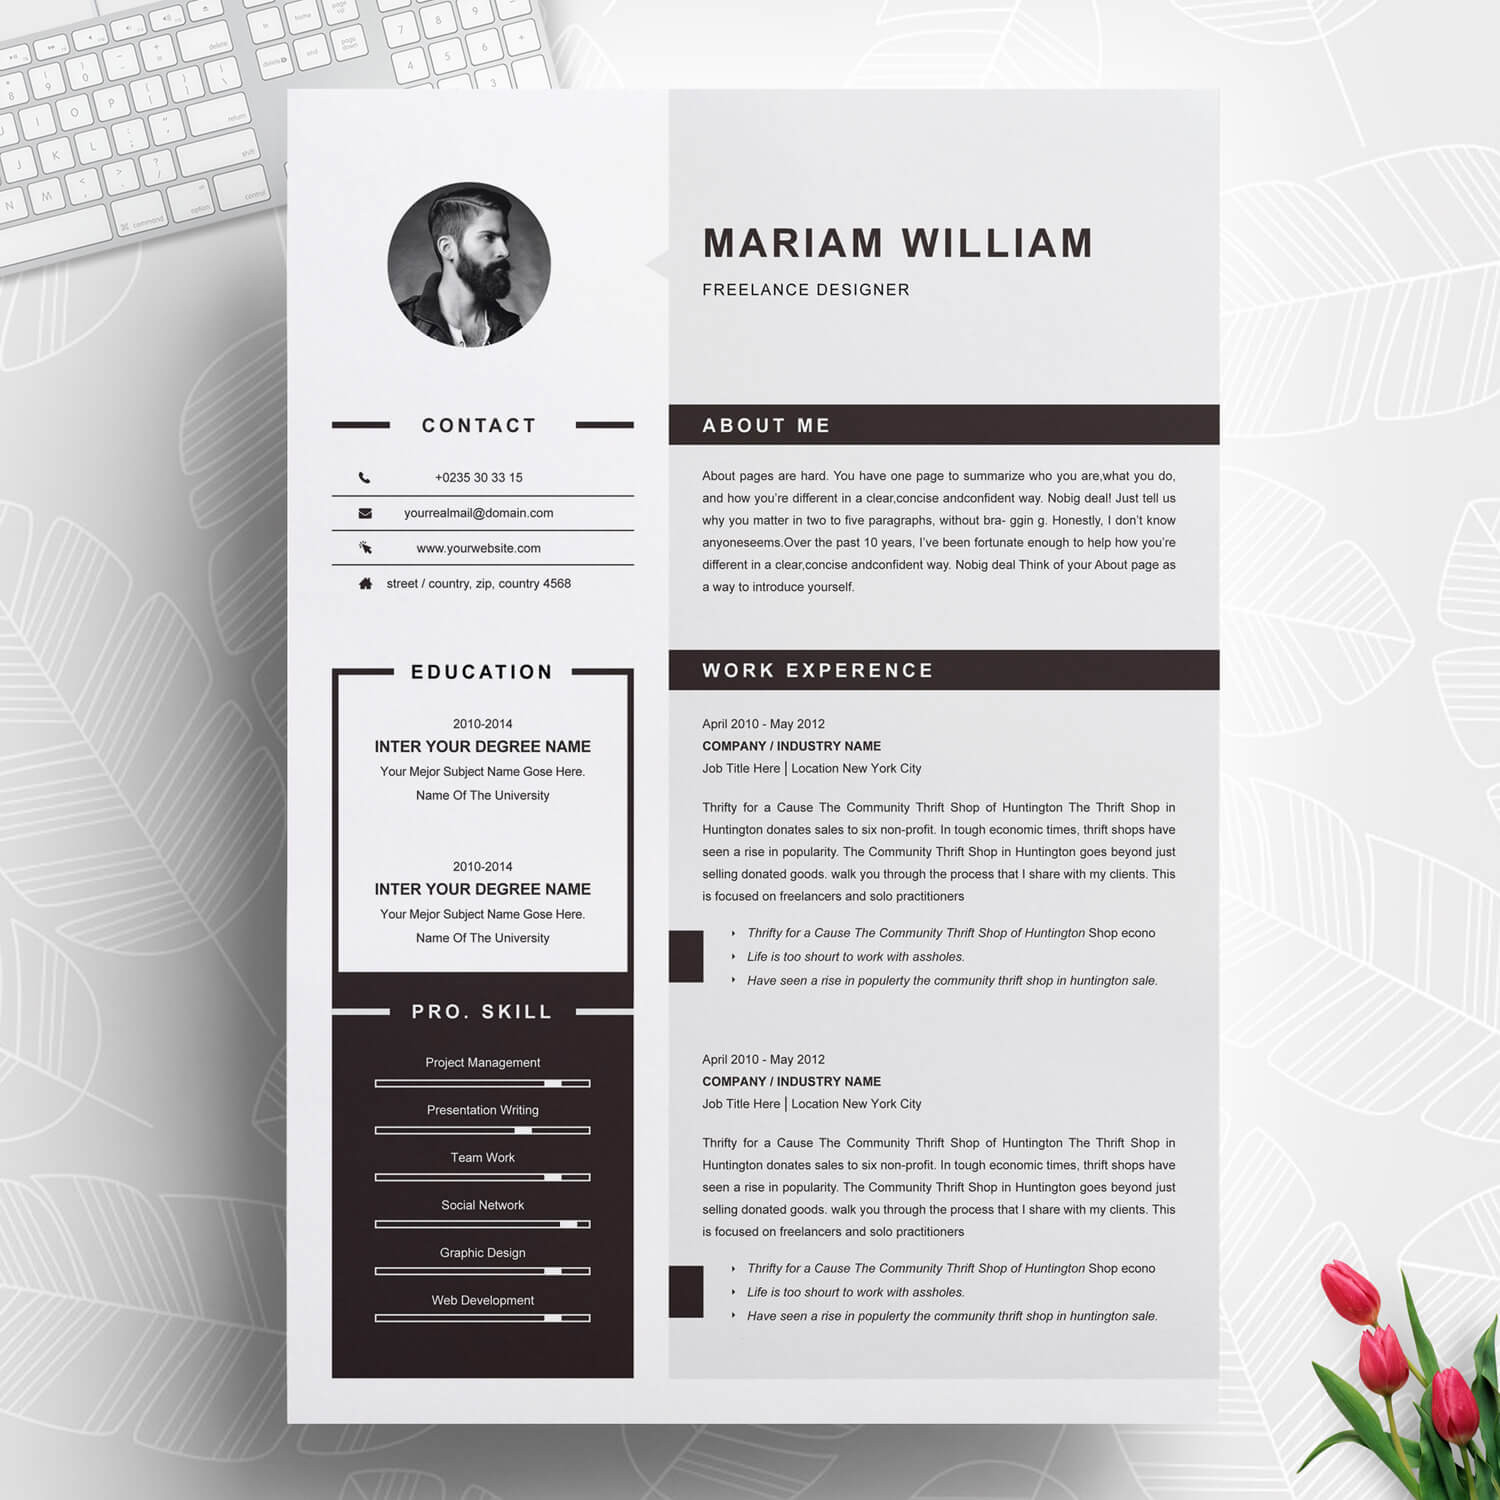 Sample Resume for Freelance Graphic Designer Freelance Graphic Designer Resume – Resumeinventor